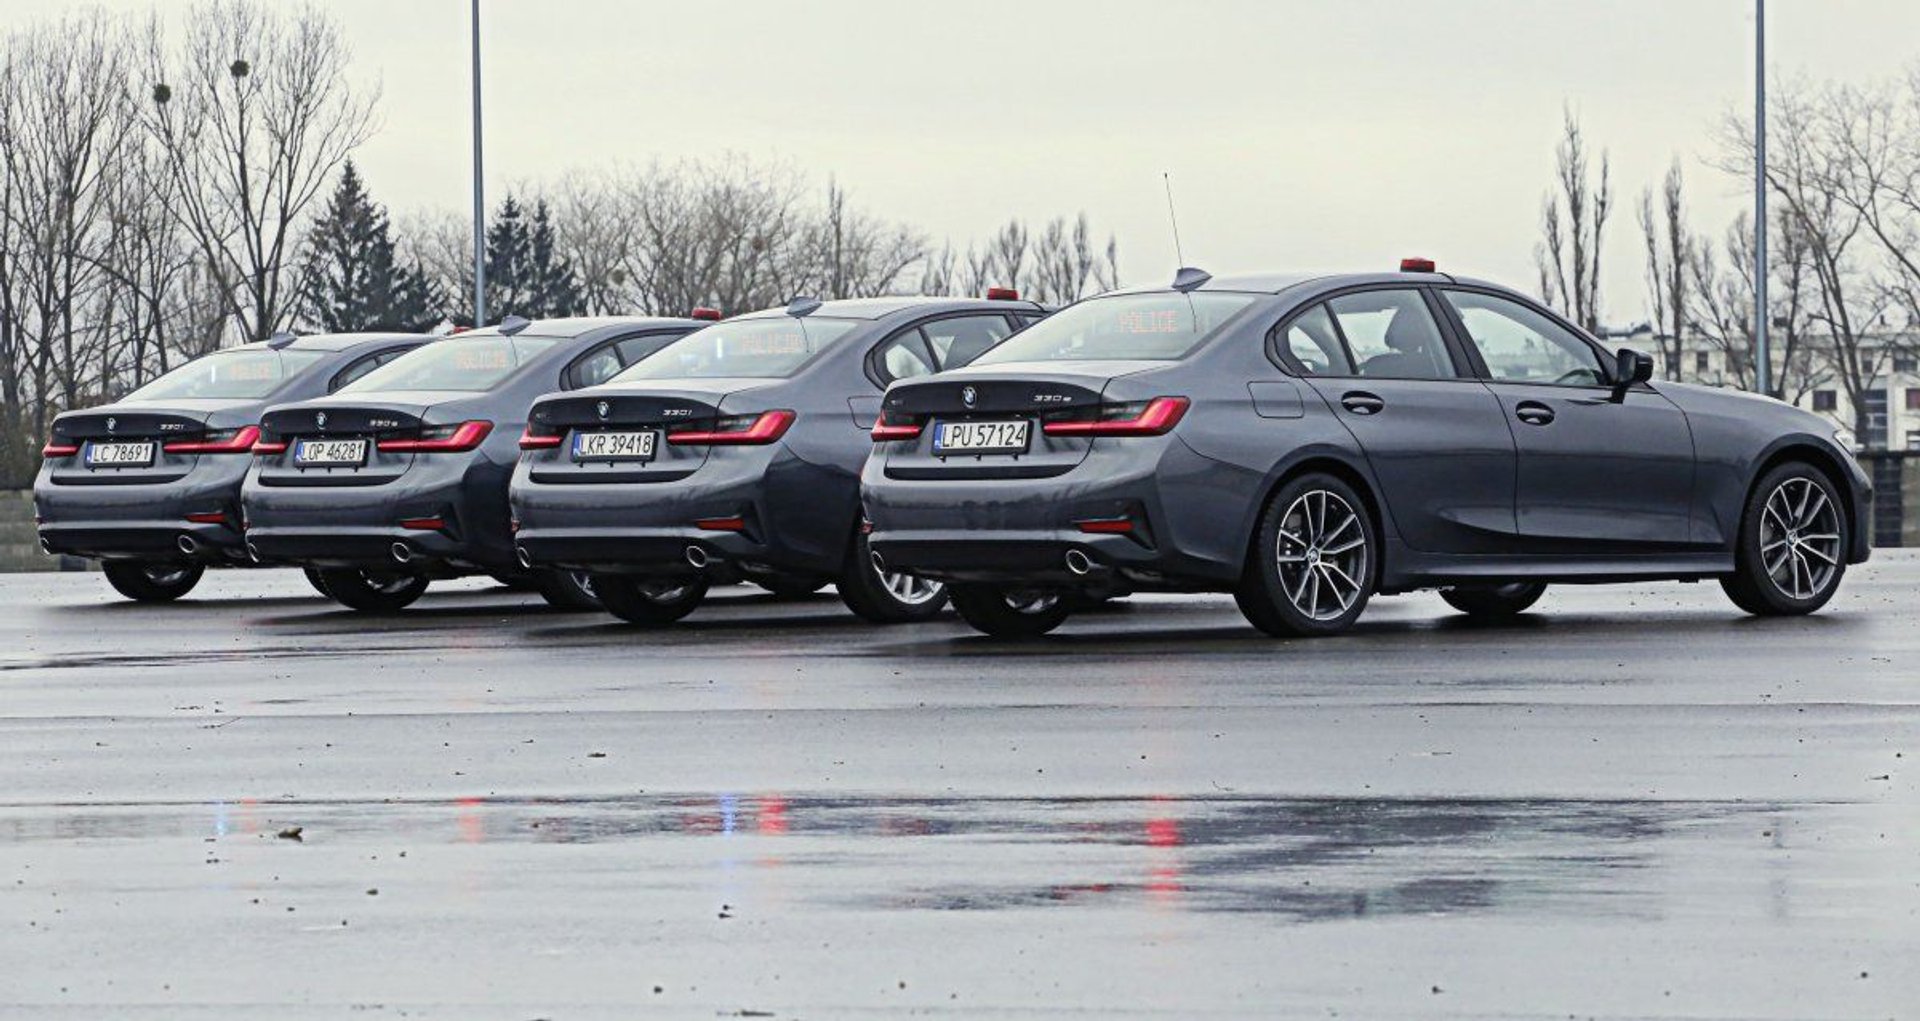 BMW w lubelskiej policji